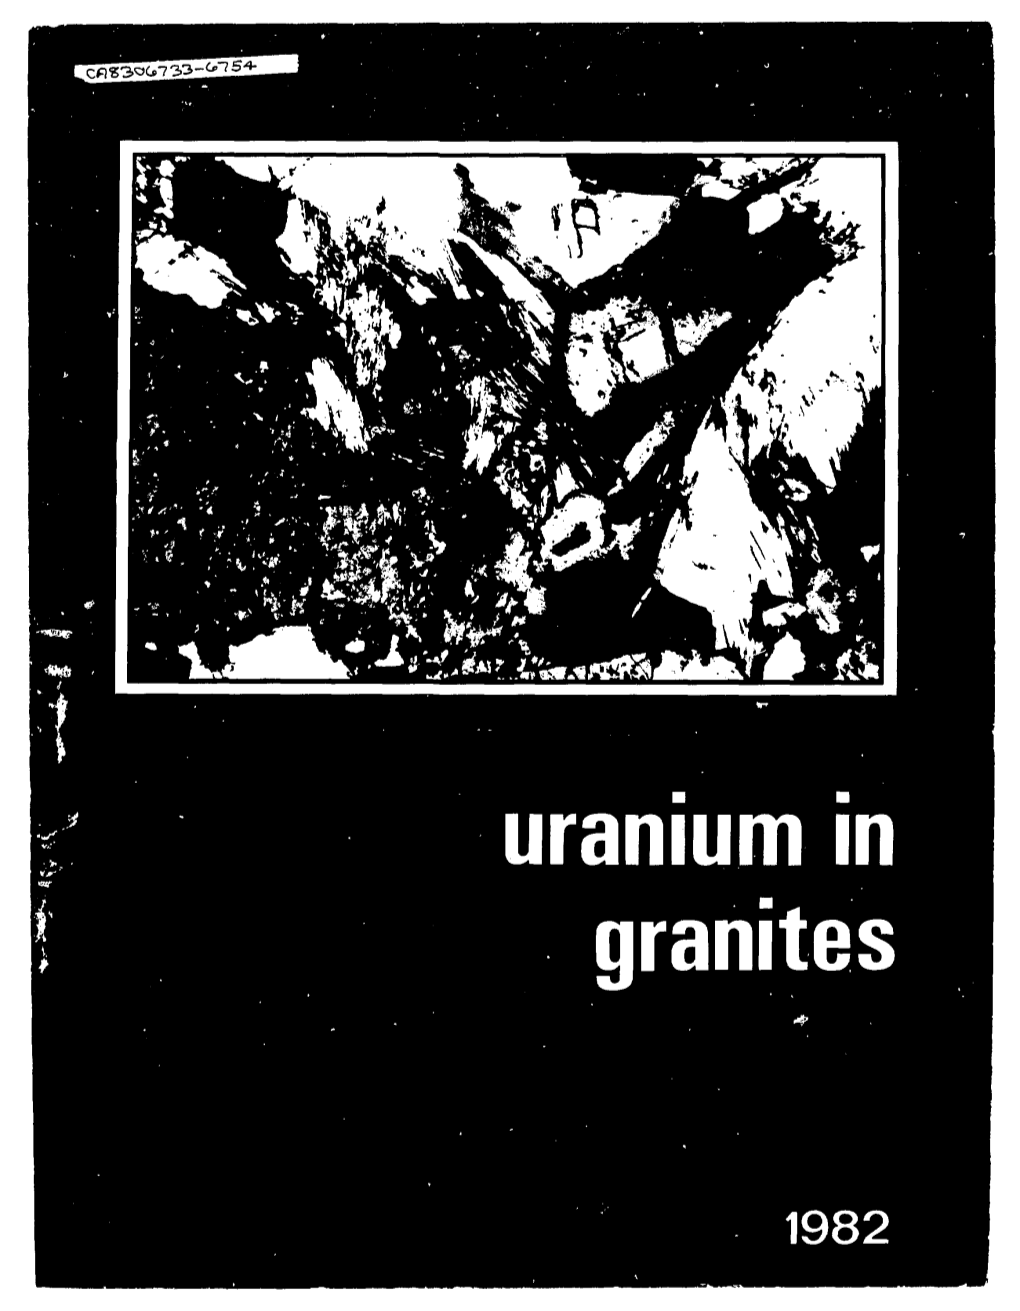 Uranium in Granites